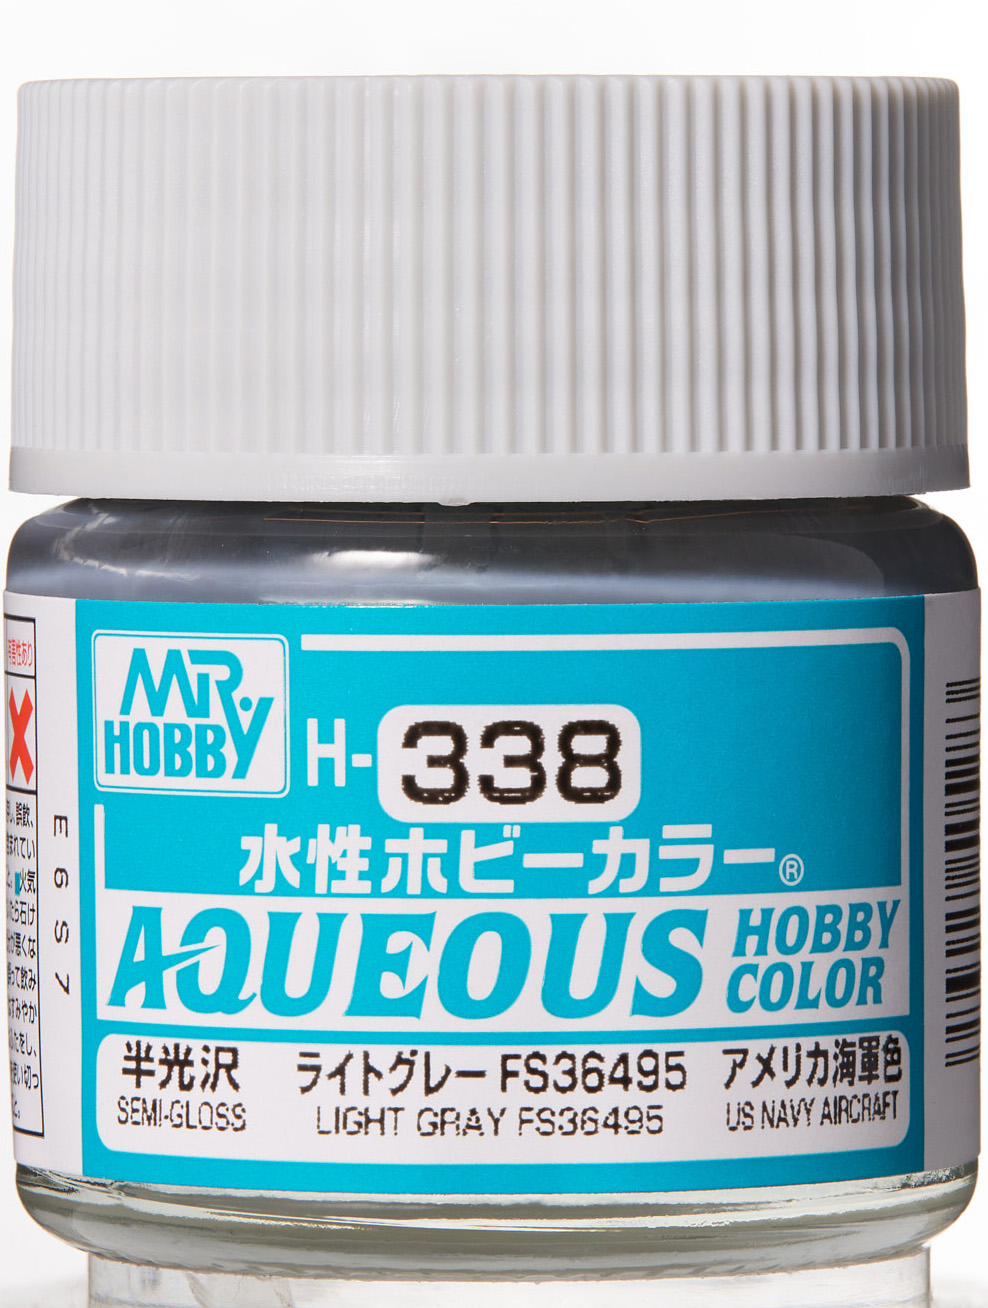 Mr. Aqueous Hobby Color - Light Gray FS36495 - H338 - Hellgrau FS36495 